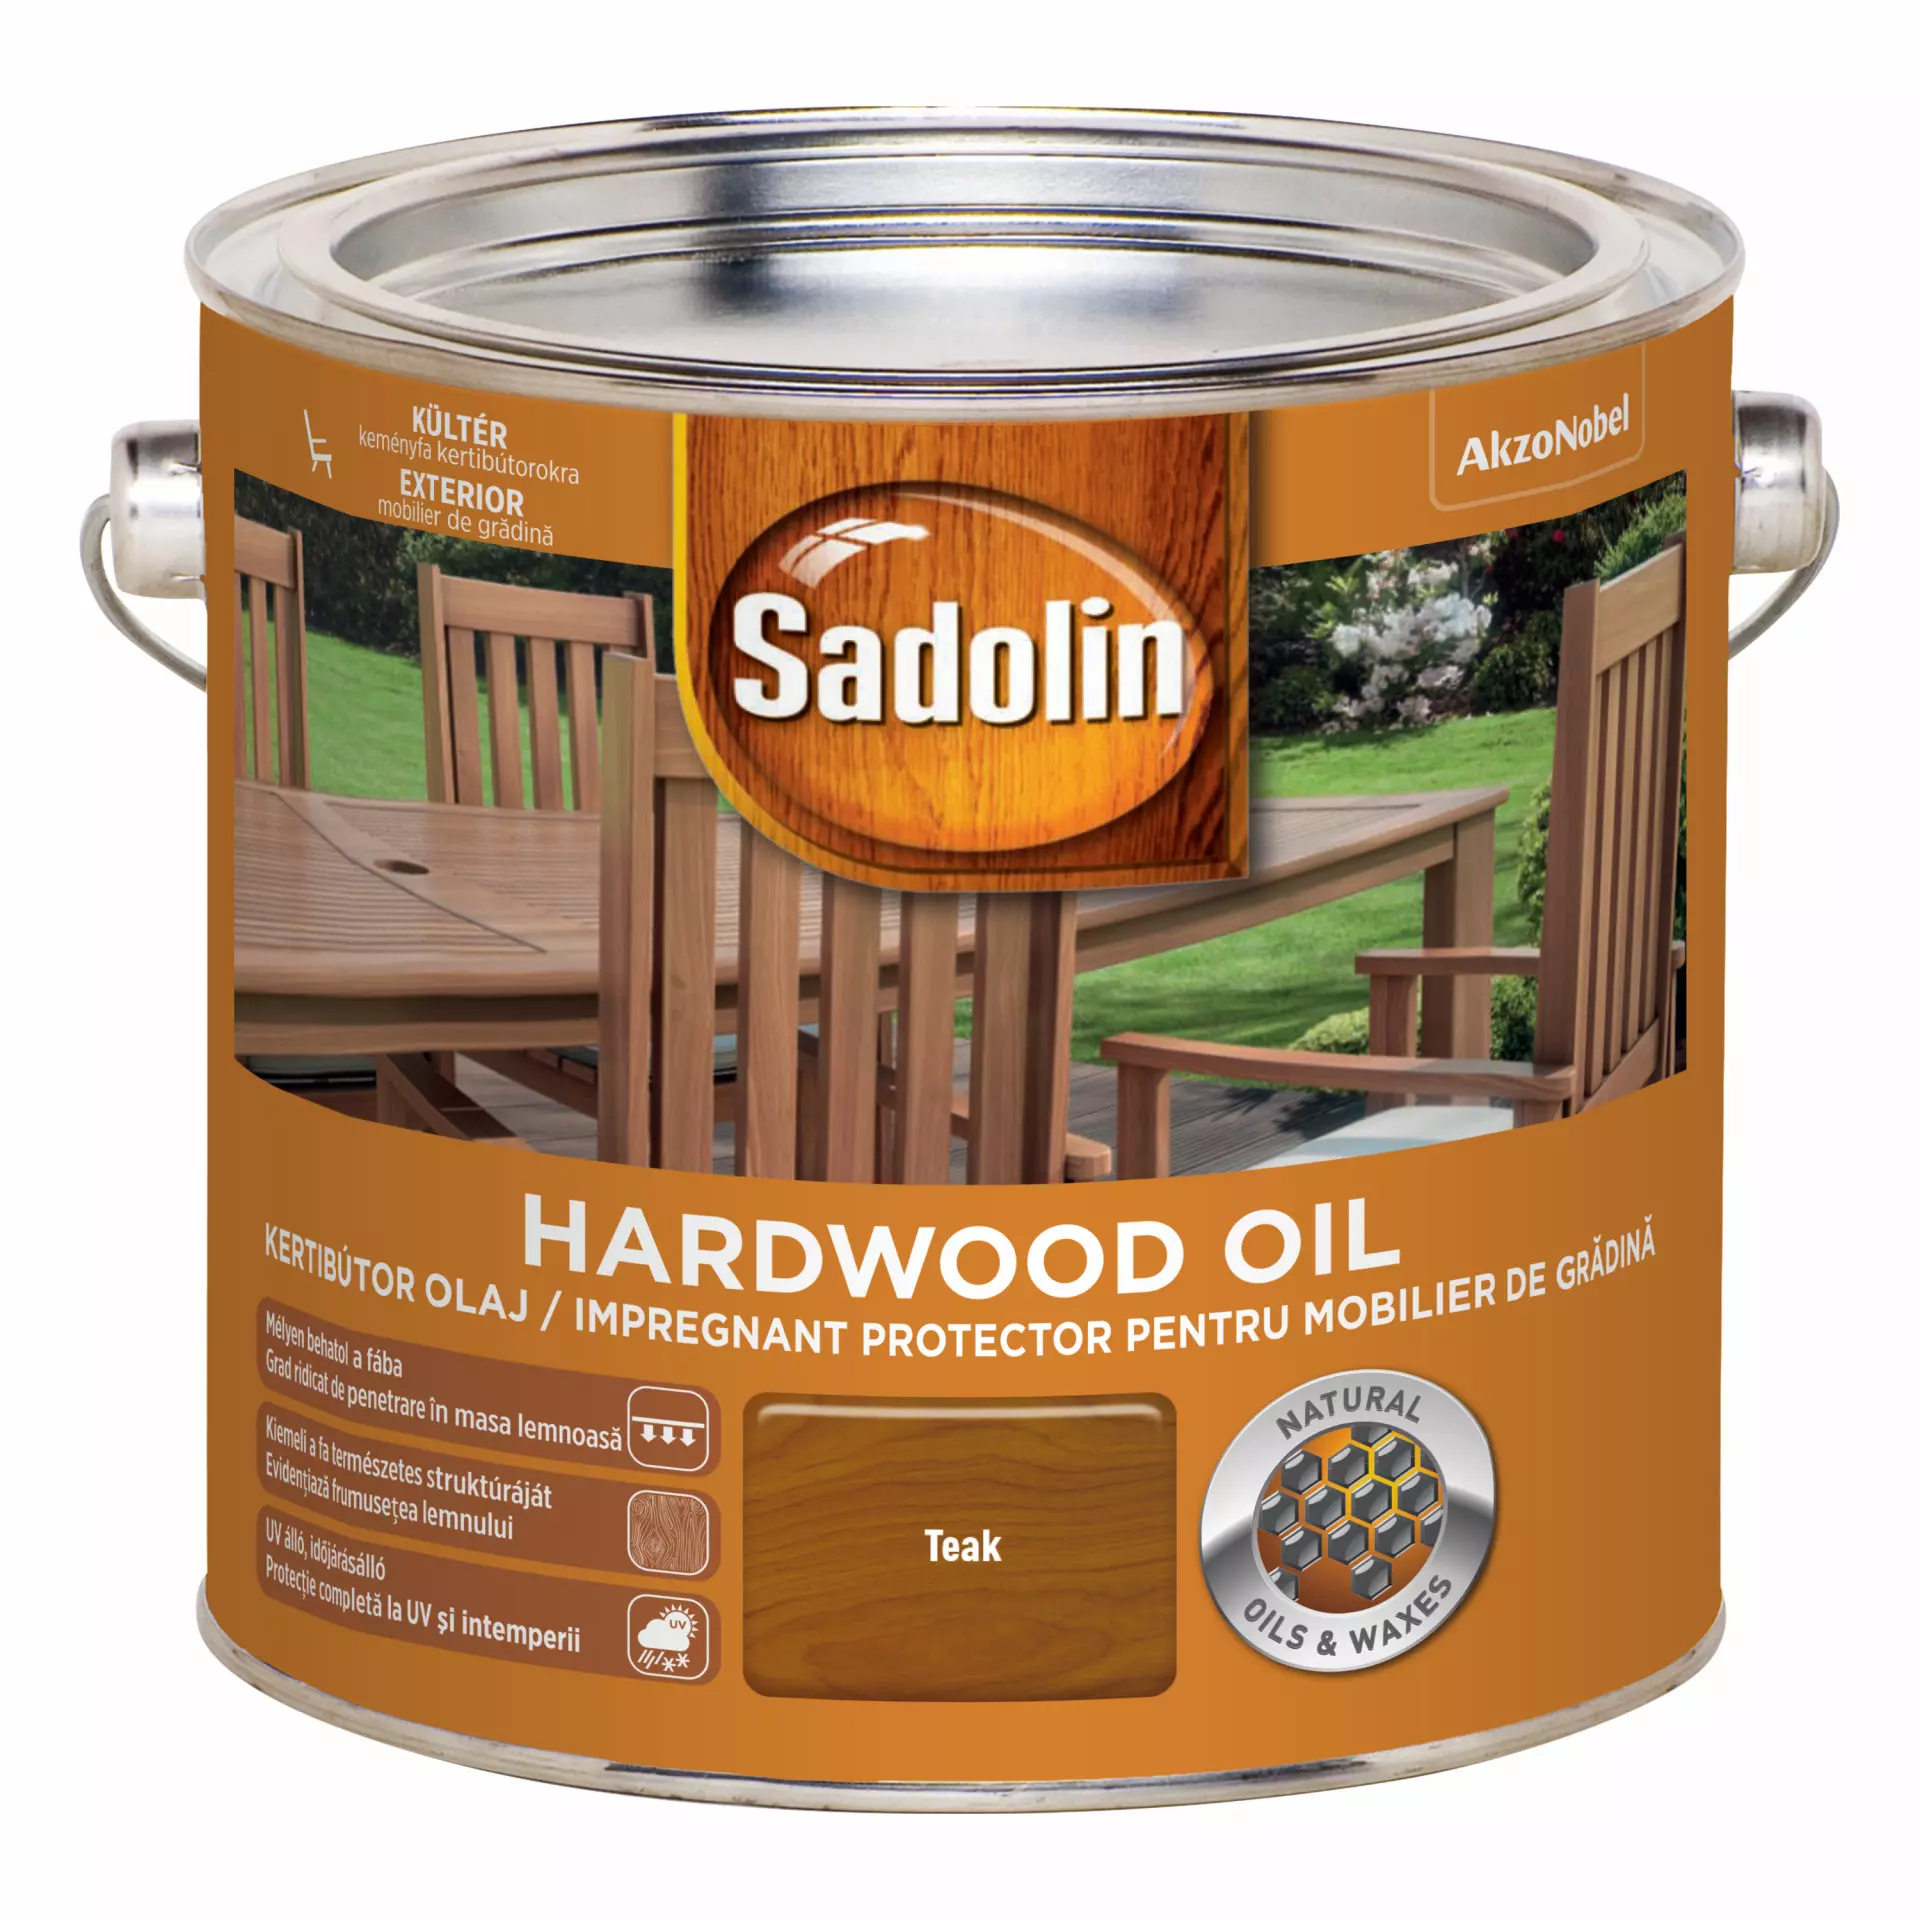 Sadolin Hardwood Oil kertibútor ápolóolaj 2,5 l Teak